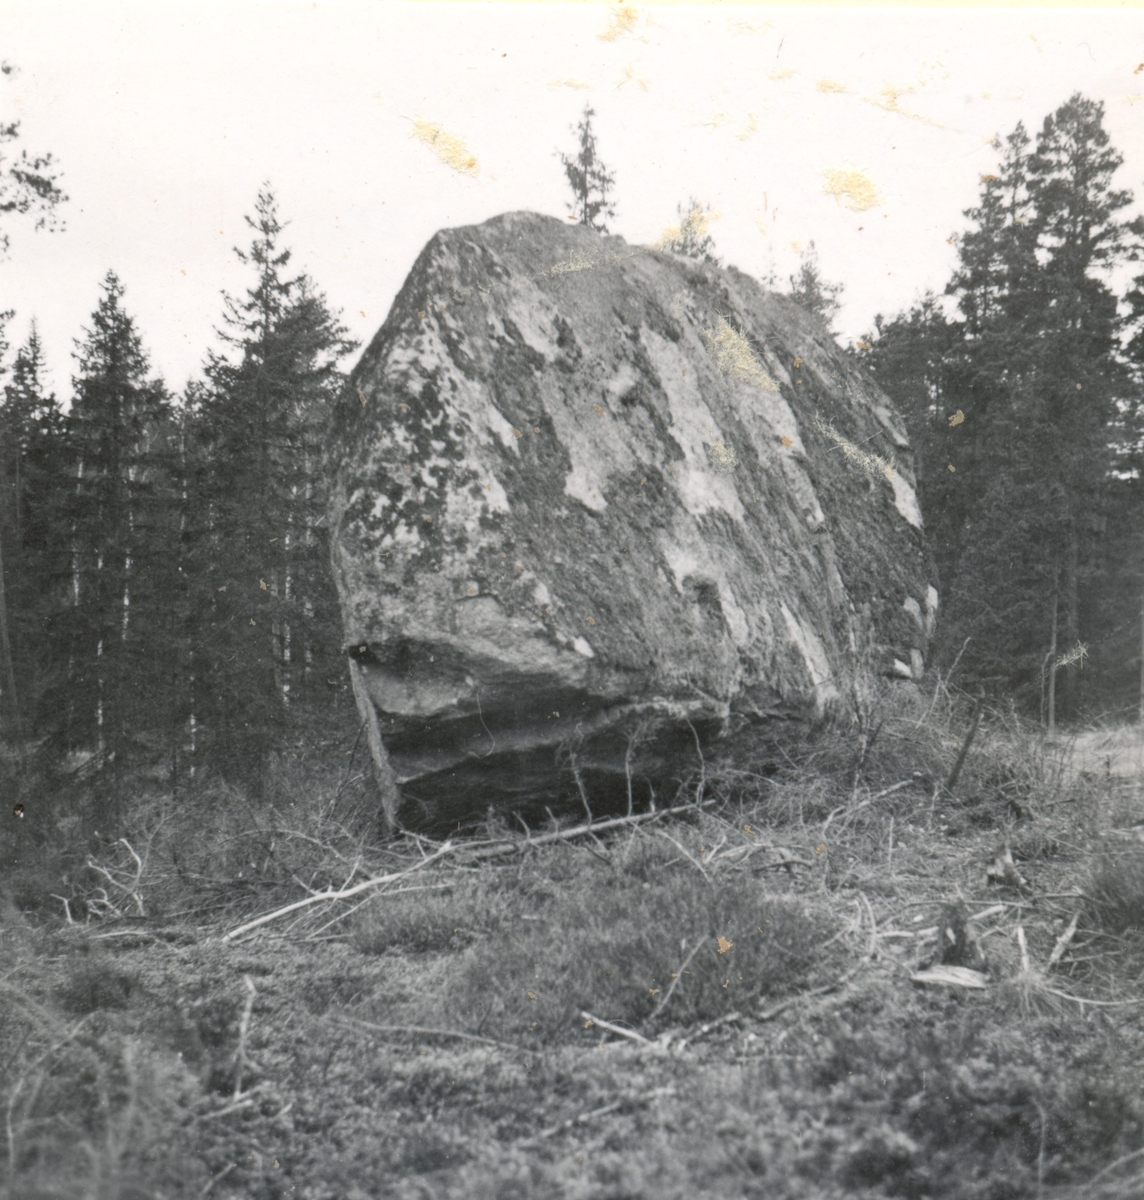 Ett flyttblock i Skäfshult

Flyttblock

Foto M. Hofrén 1947.